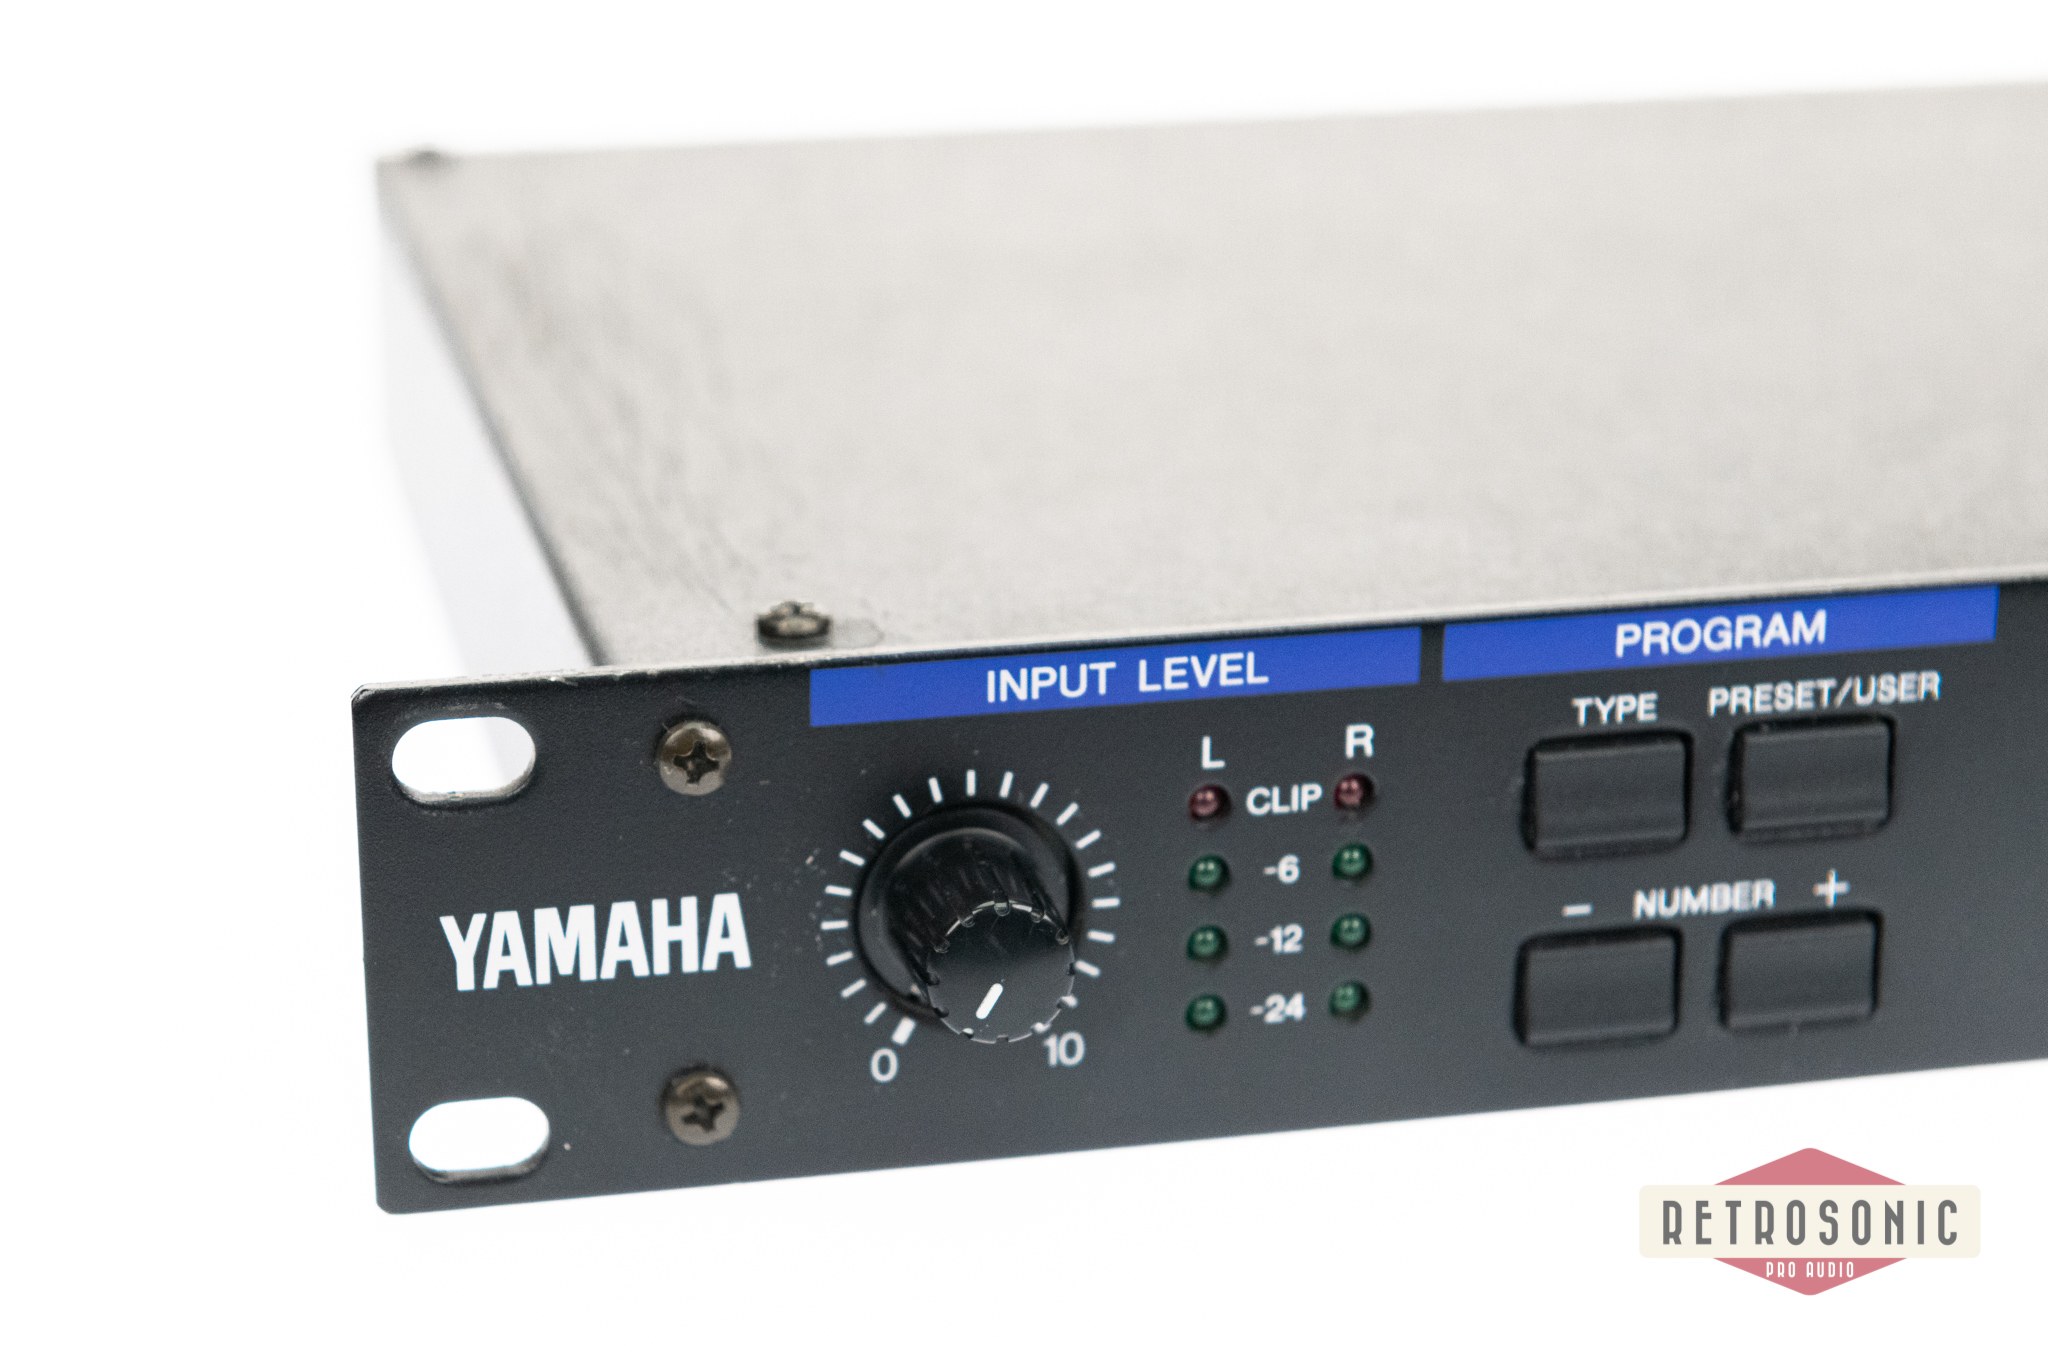 Yamaha REV-500 Digital Reverberator #1